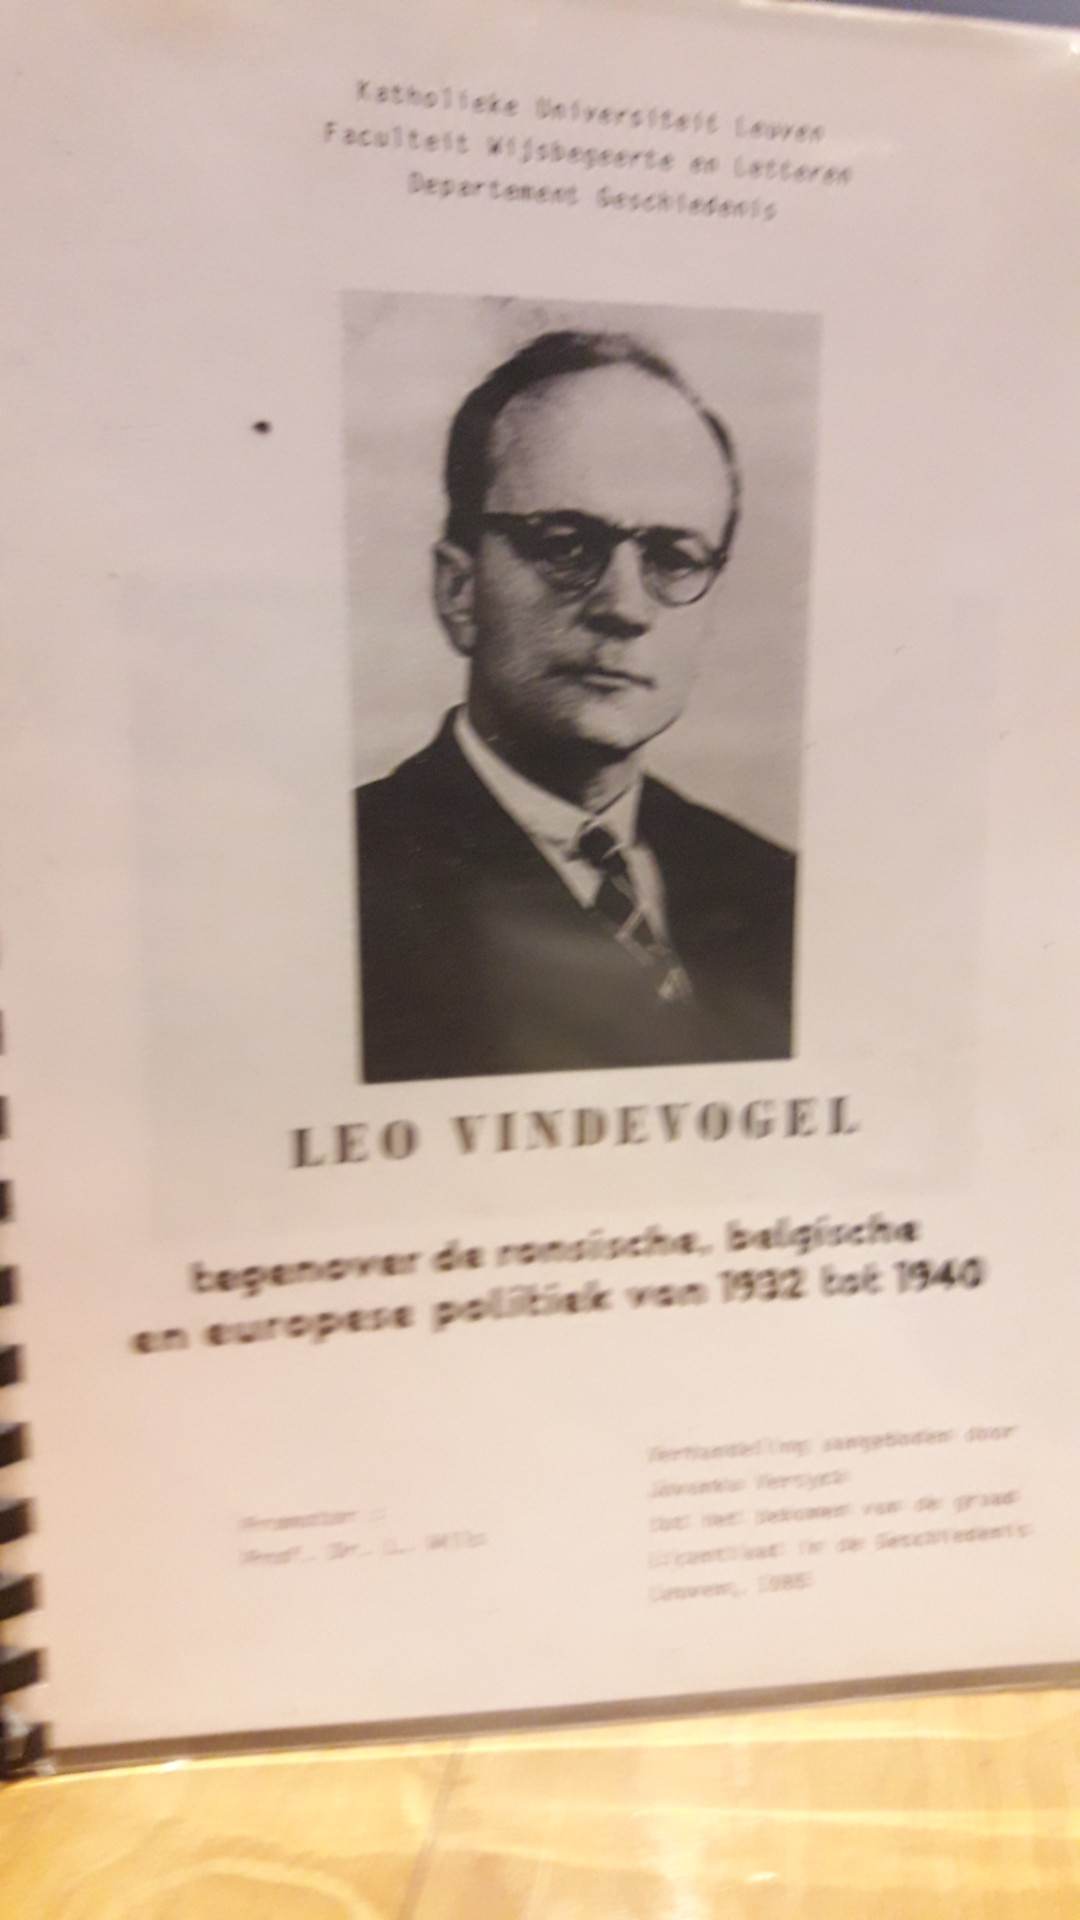 Dossier Leo Vindevogel tegenover Ronsische , belgische en europese politiek 1932 / 1940